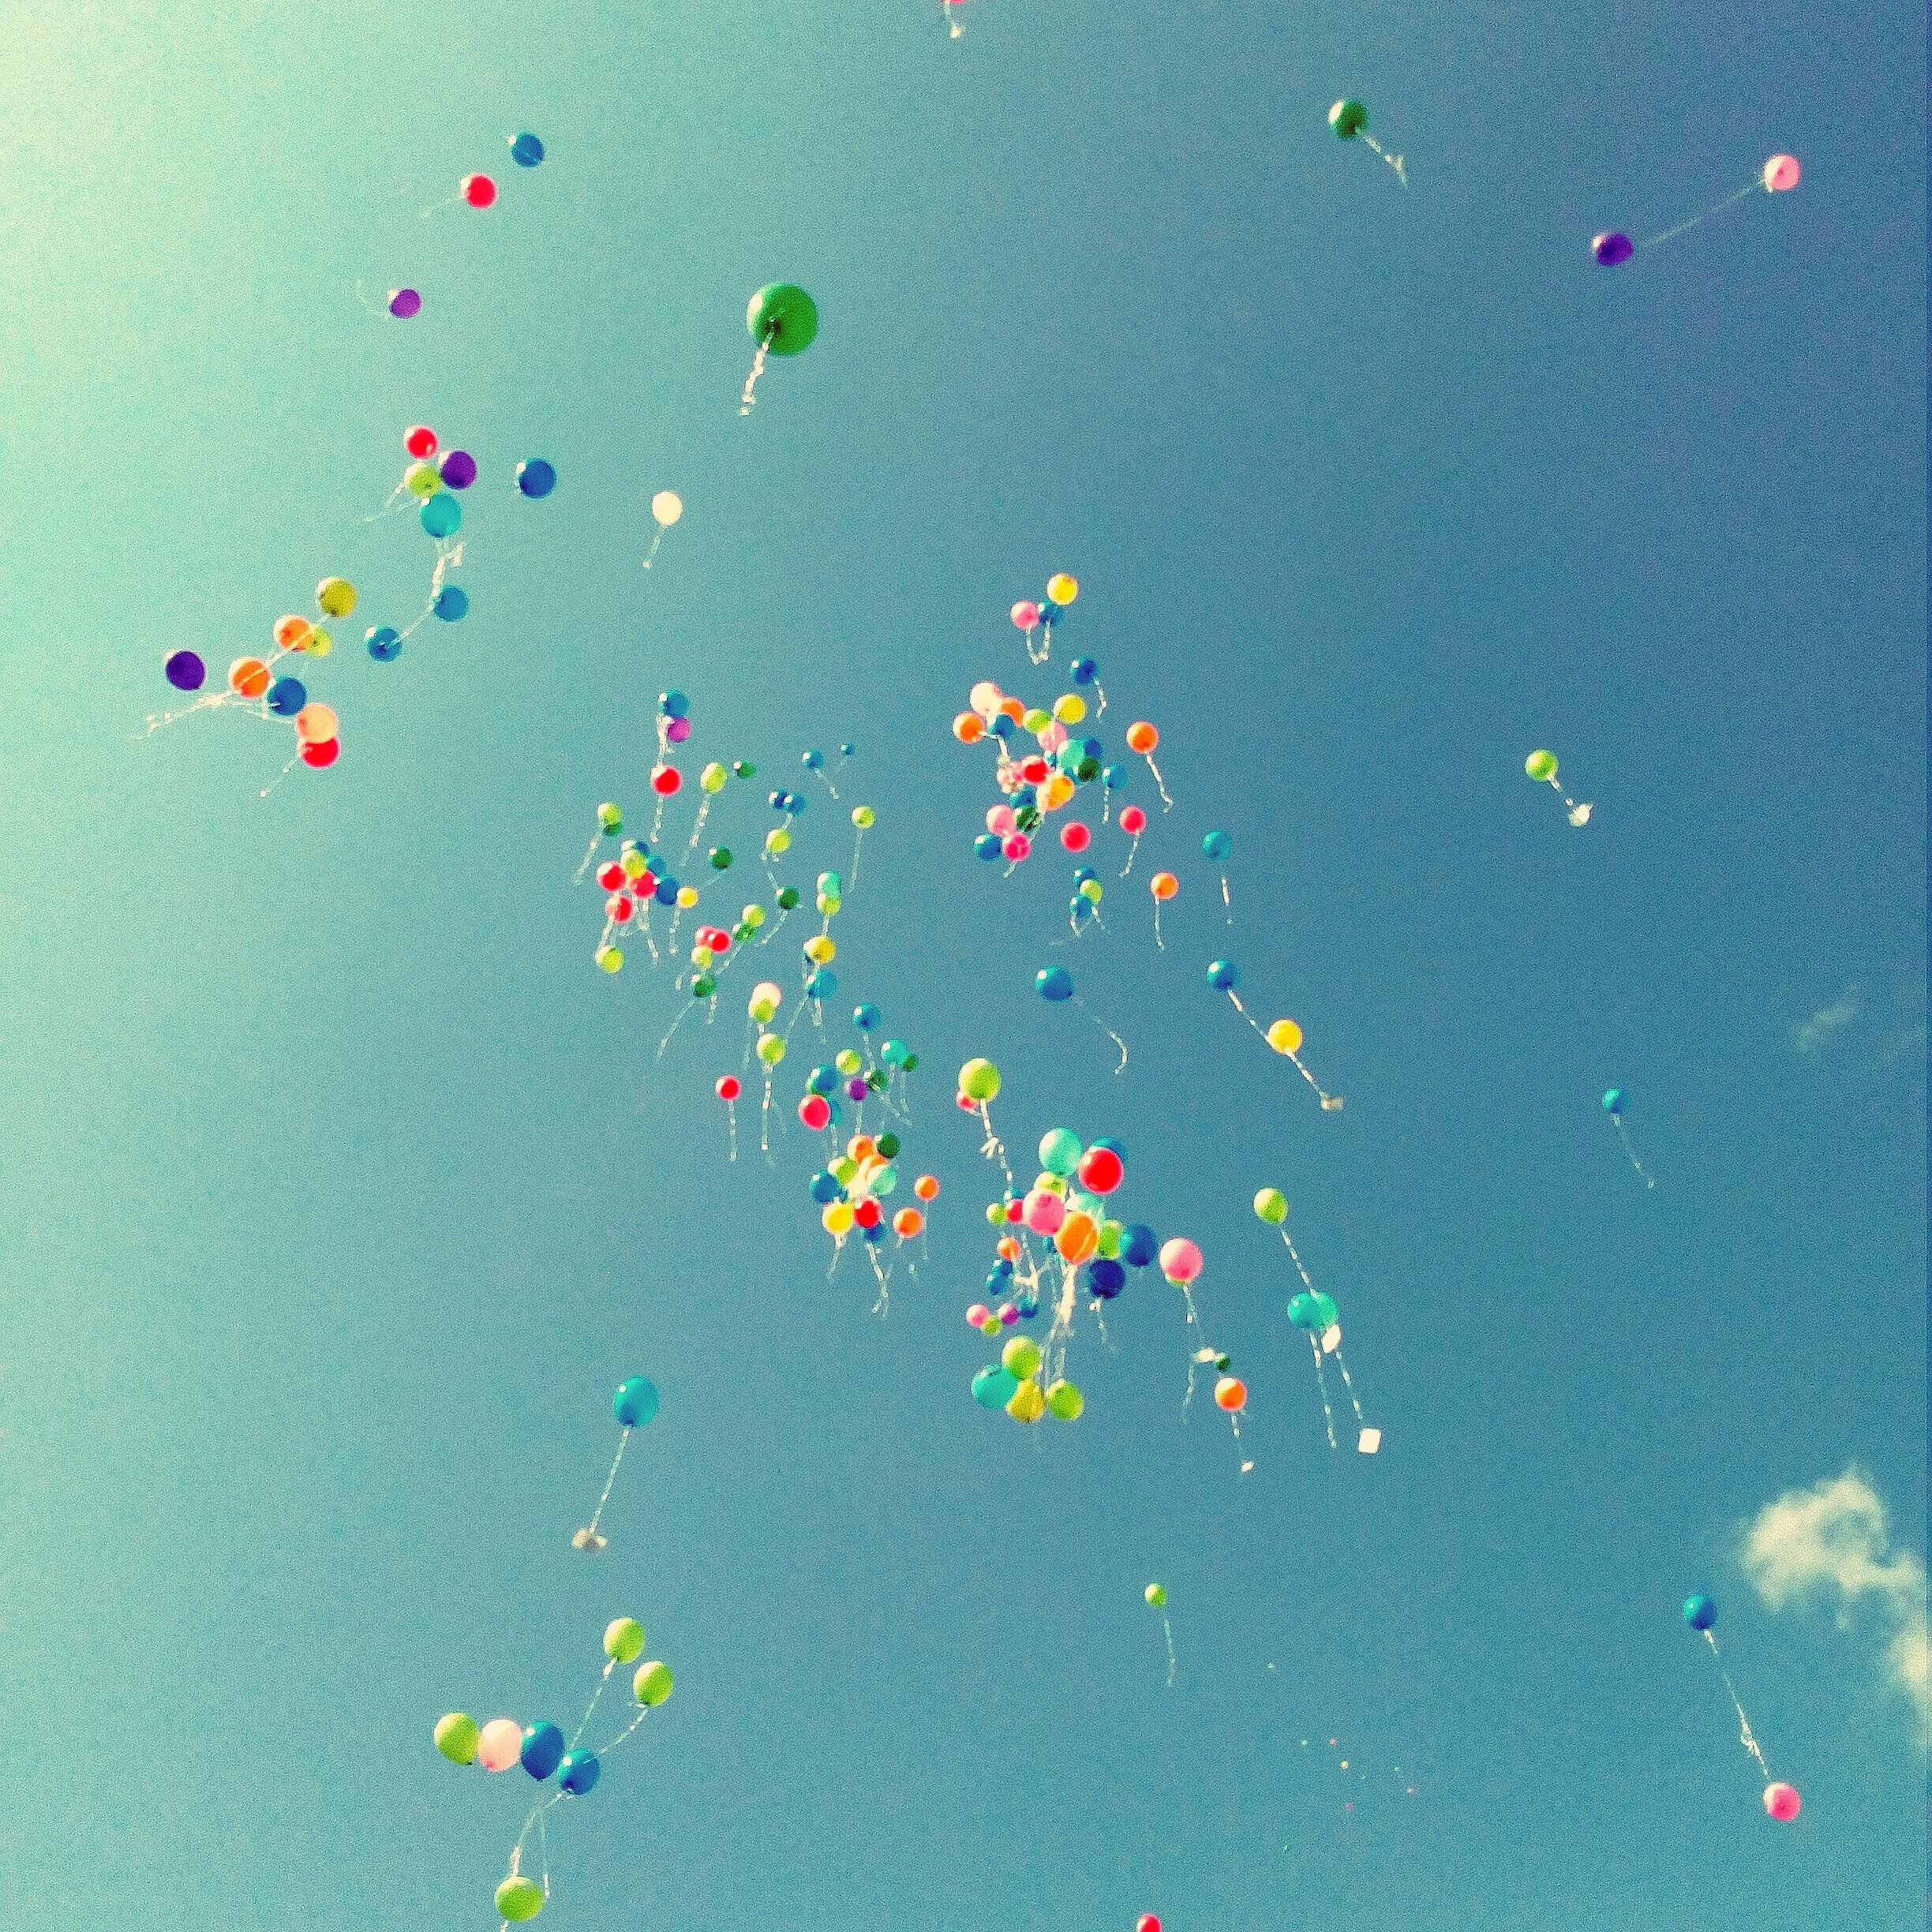 Wir sollten immer unsere kindliche Neugier behalten!
#neuhier #vondirinspiriert #neugier #luftballons #himmel #bunt